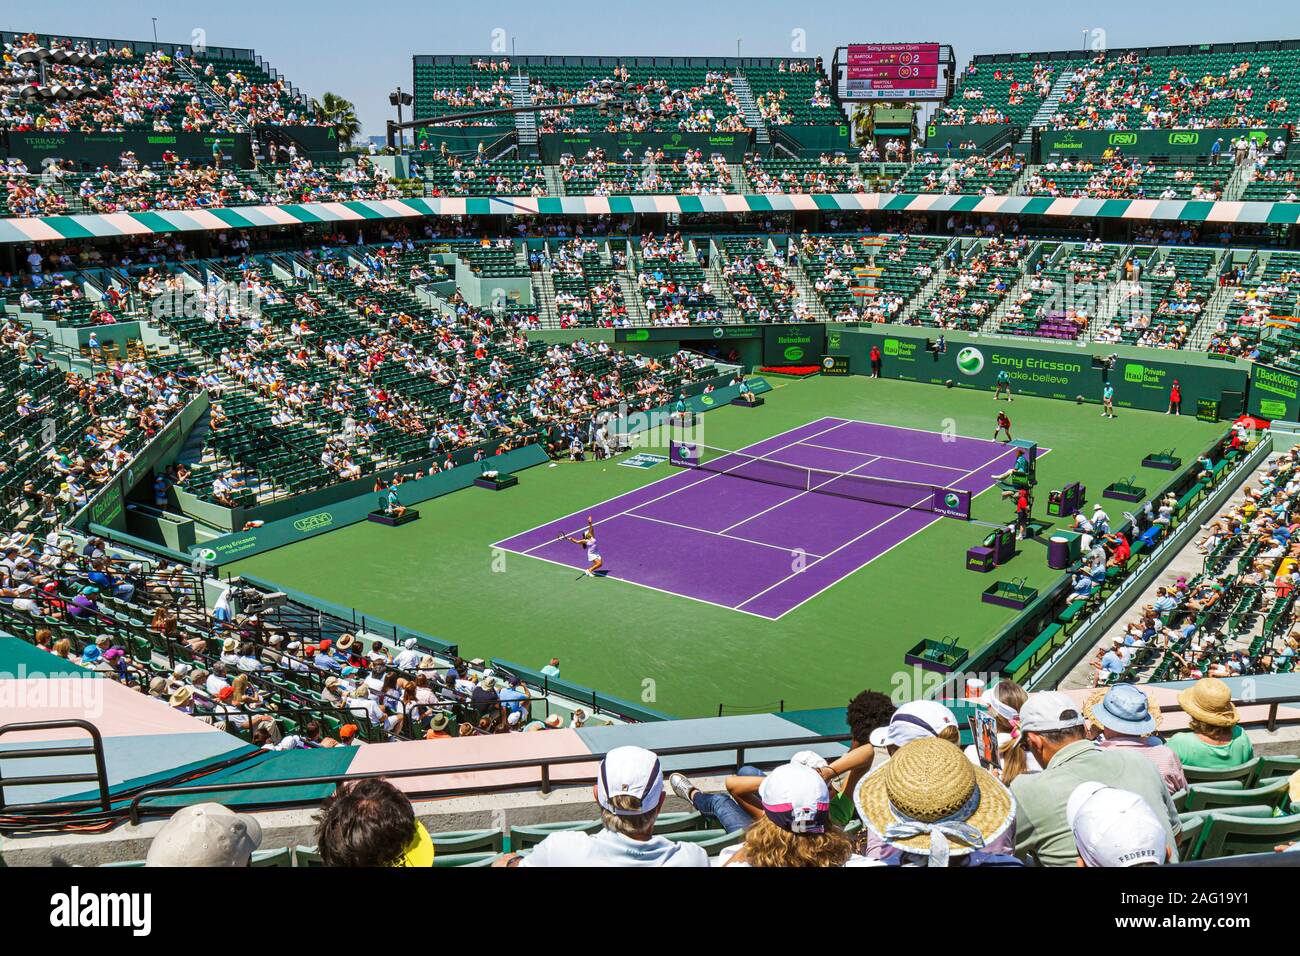 Miami Florida,Key Biscayne,Sony Ericsson OpenAL tournoi de tennis,stade sportif,à moitié vide, fans,venus Williams,FL100405028 Banque D'Images